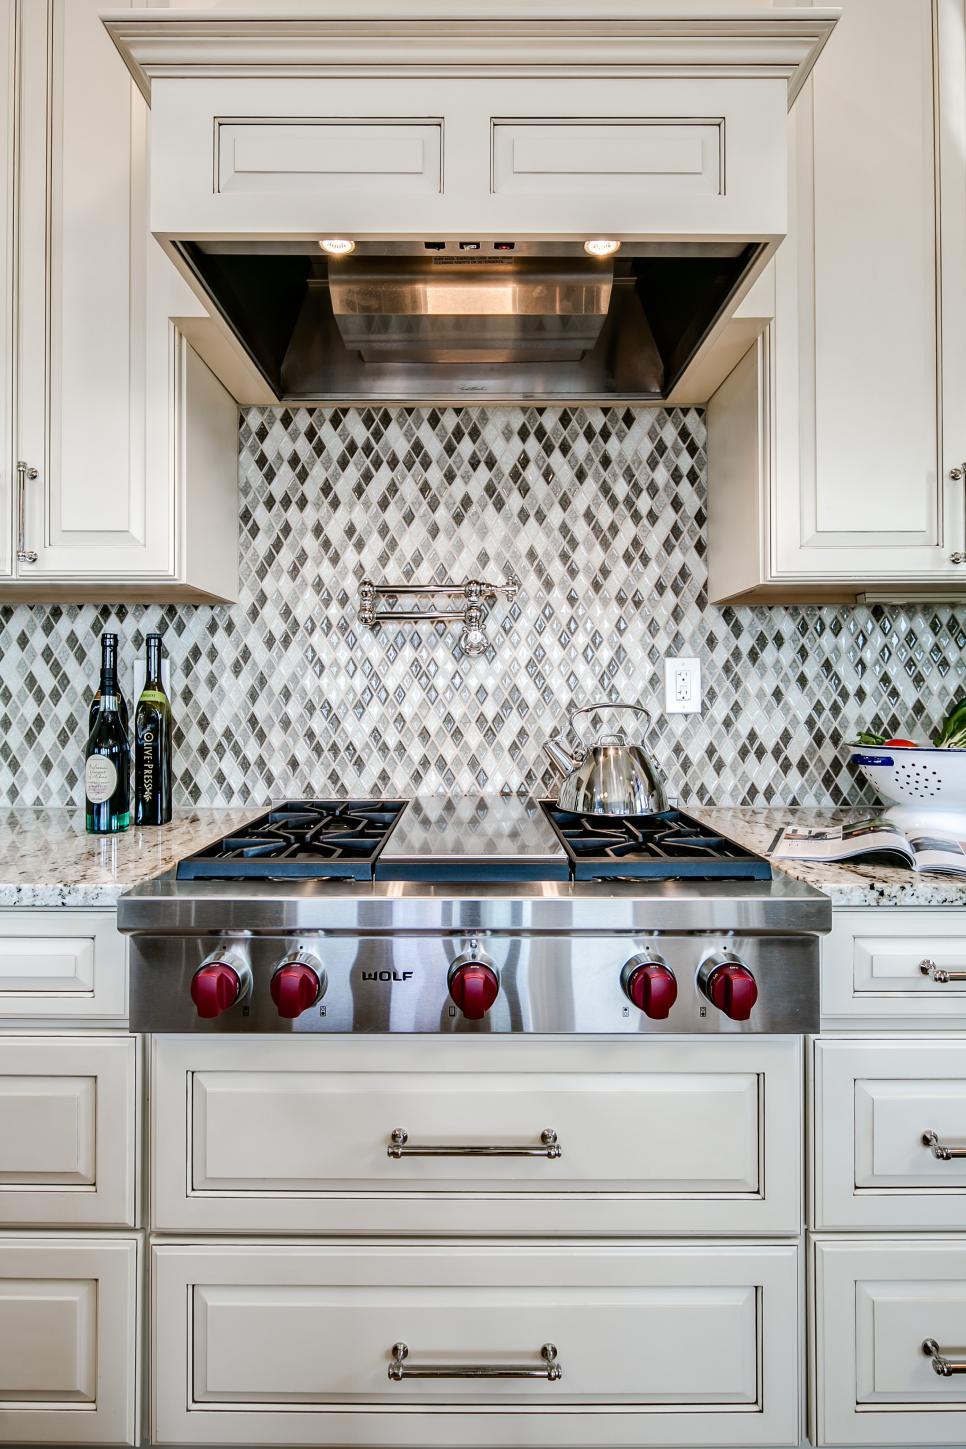 Kitchen Features Eye-Catching Mosaic Tile Backsplash | HGTV